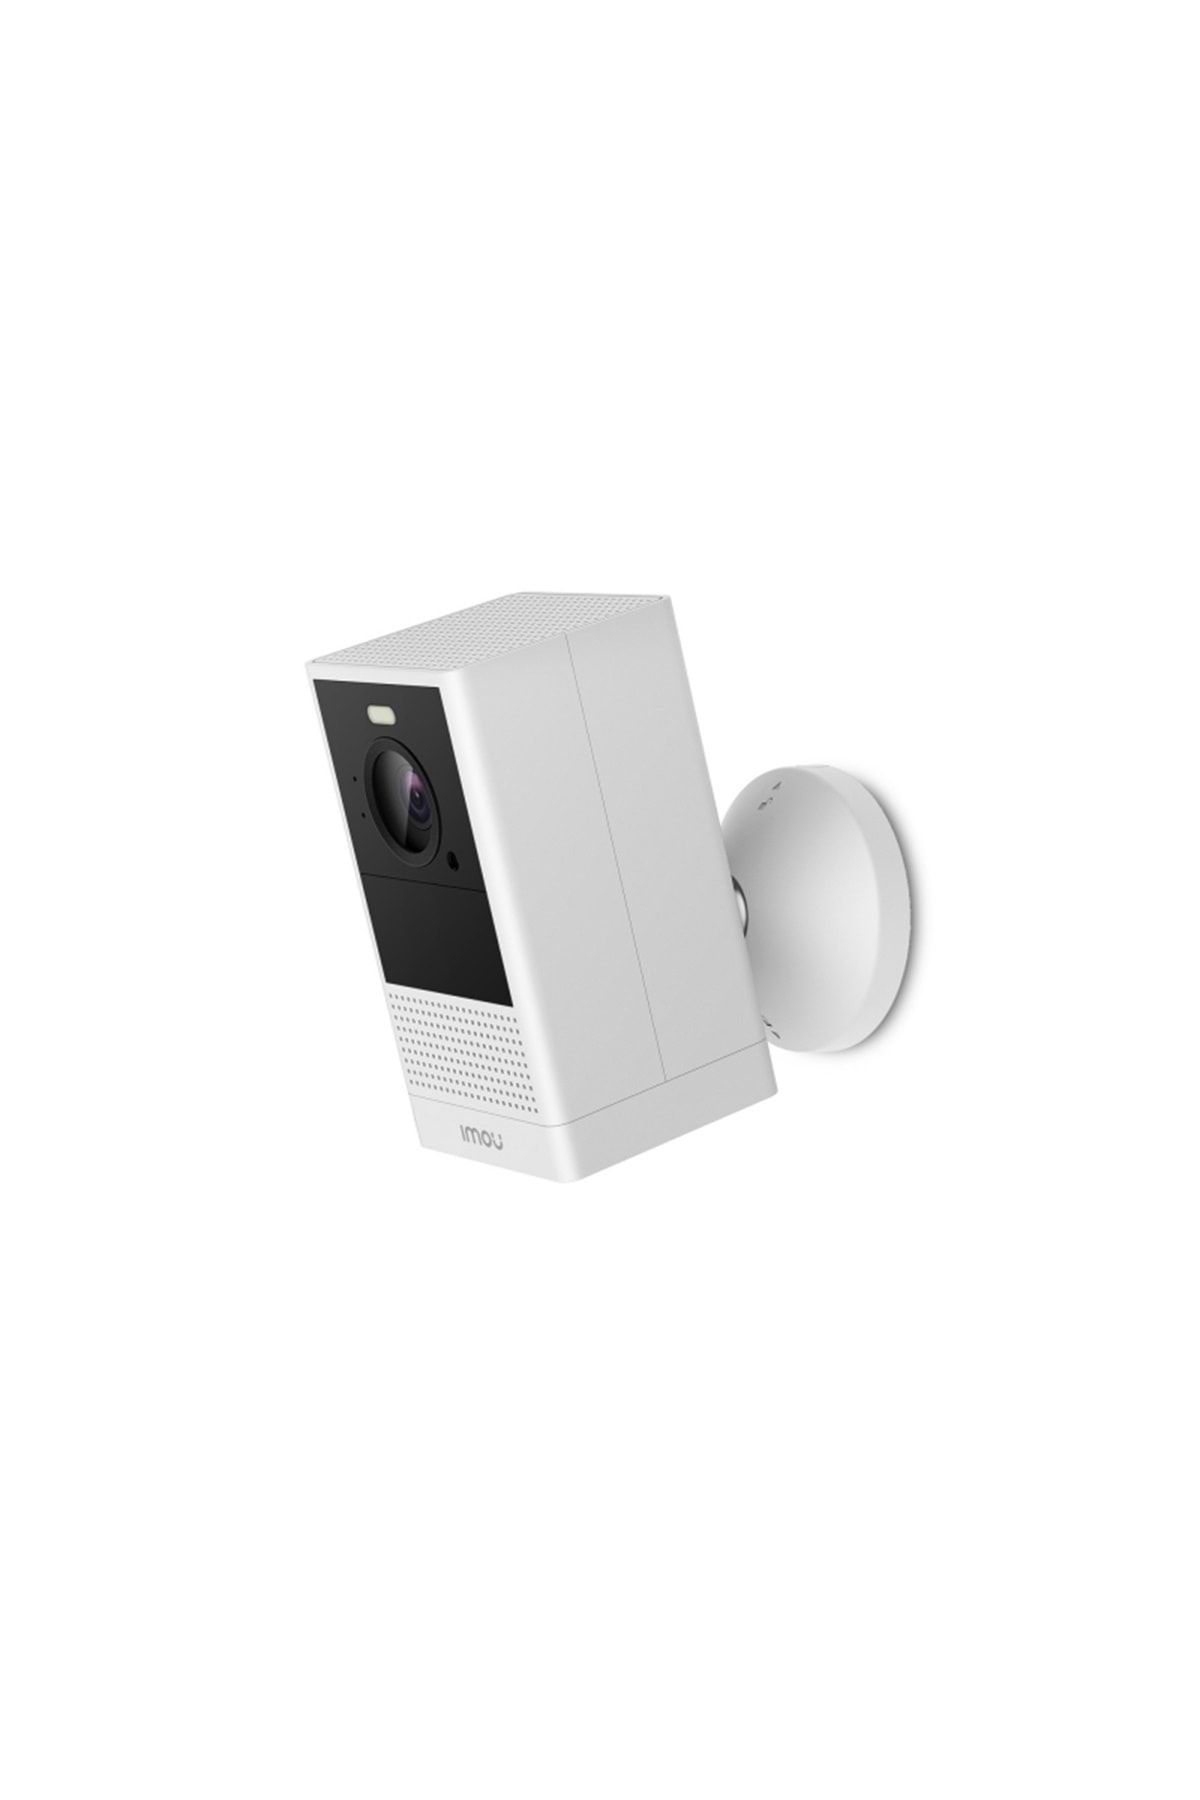 Dahua (ımou) Cell 2 Ipc-b46lp-white 4mp Dış Ortam Wifi Bataryalı Kamera(beyaz)